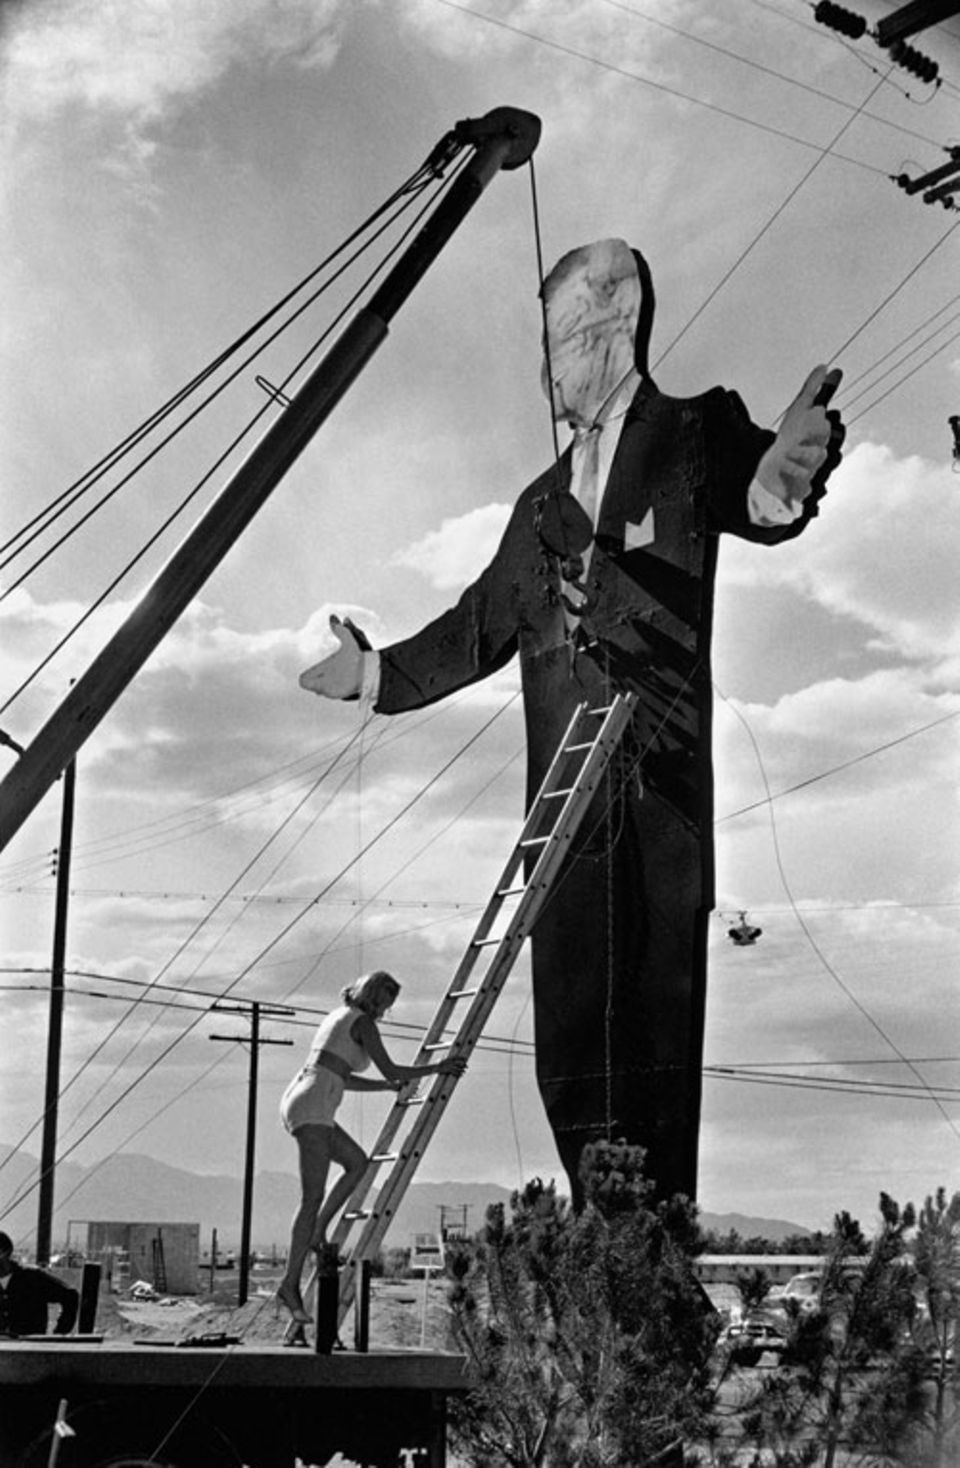 "Tropicana Hotel, Las Vegas, USA, 1957": Der gigantische Papp-Mann mag größer sein - aber diese Frau, die unbeeindruckt an ihm hochklettert, ist ohne Frage lässiger.